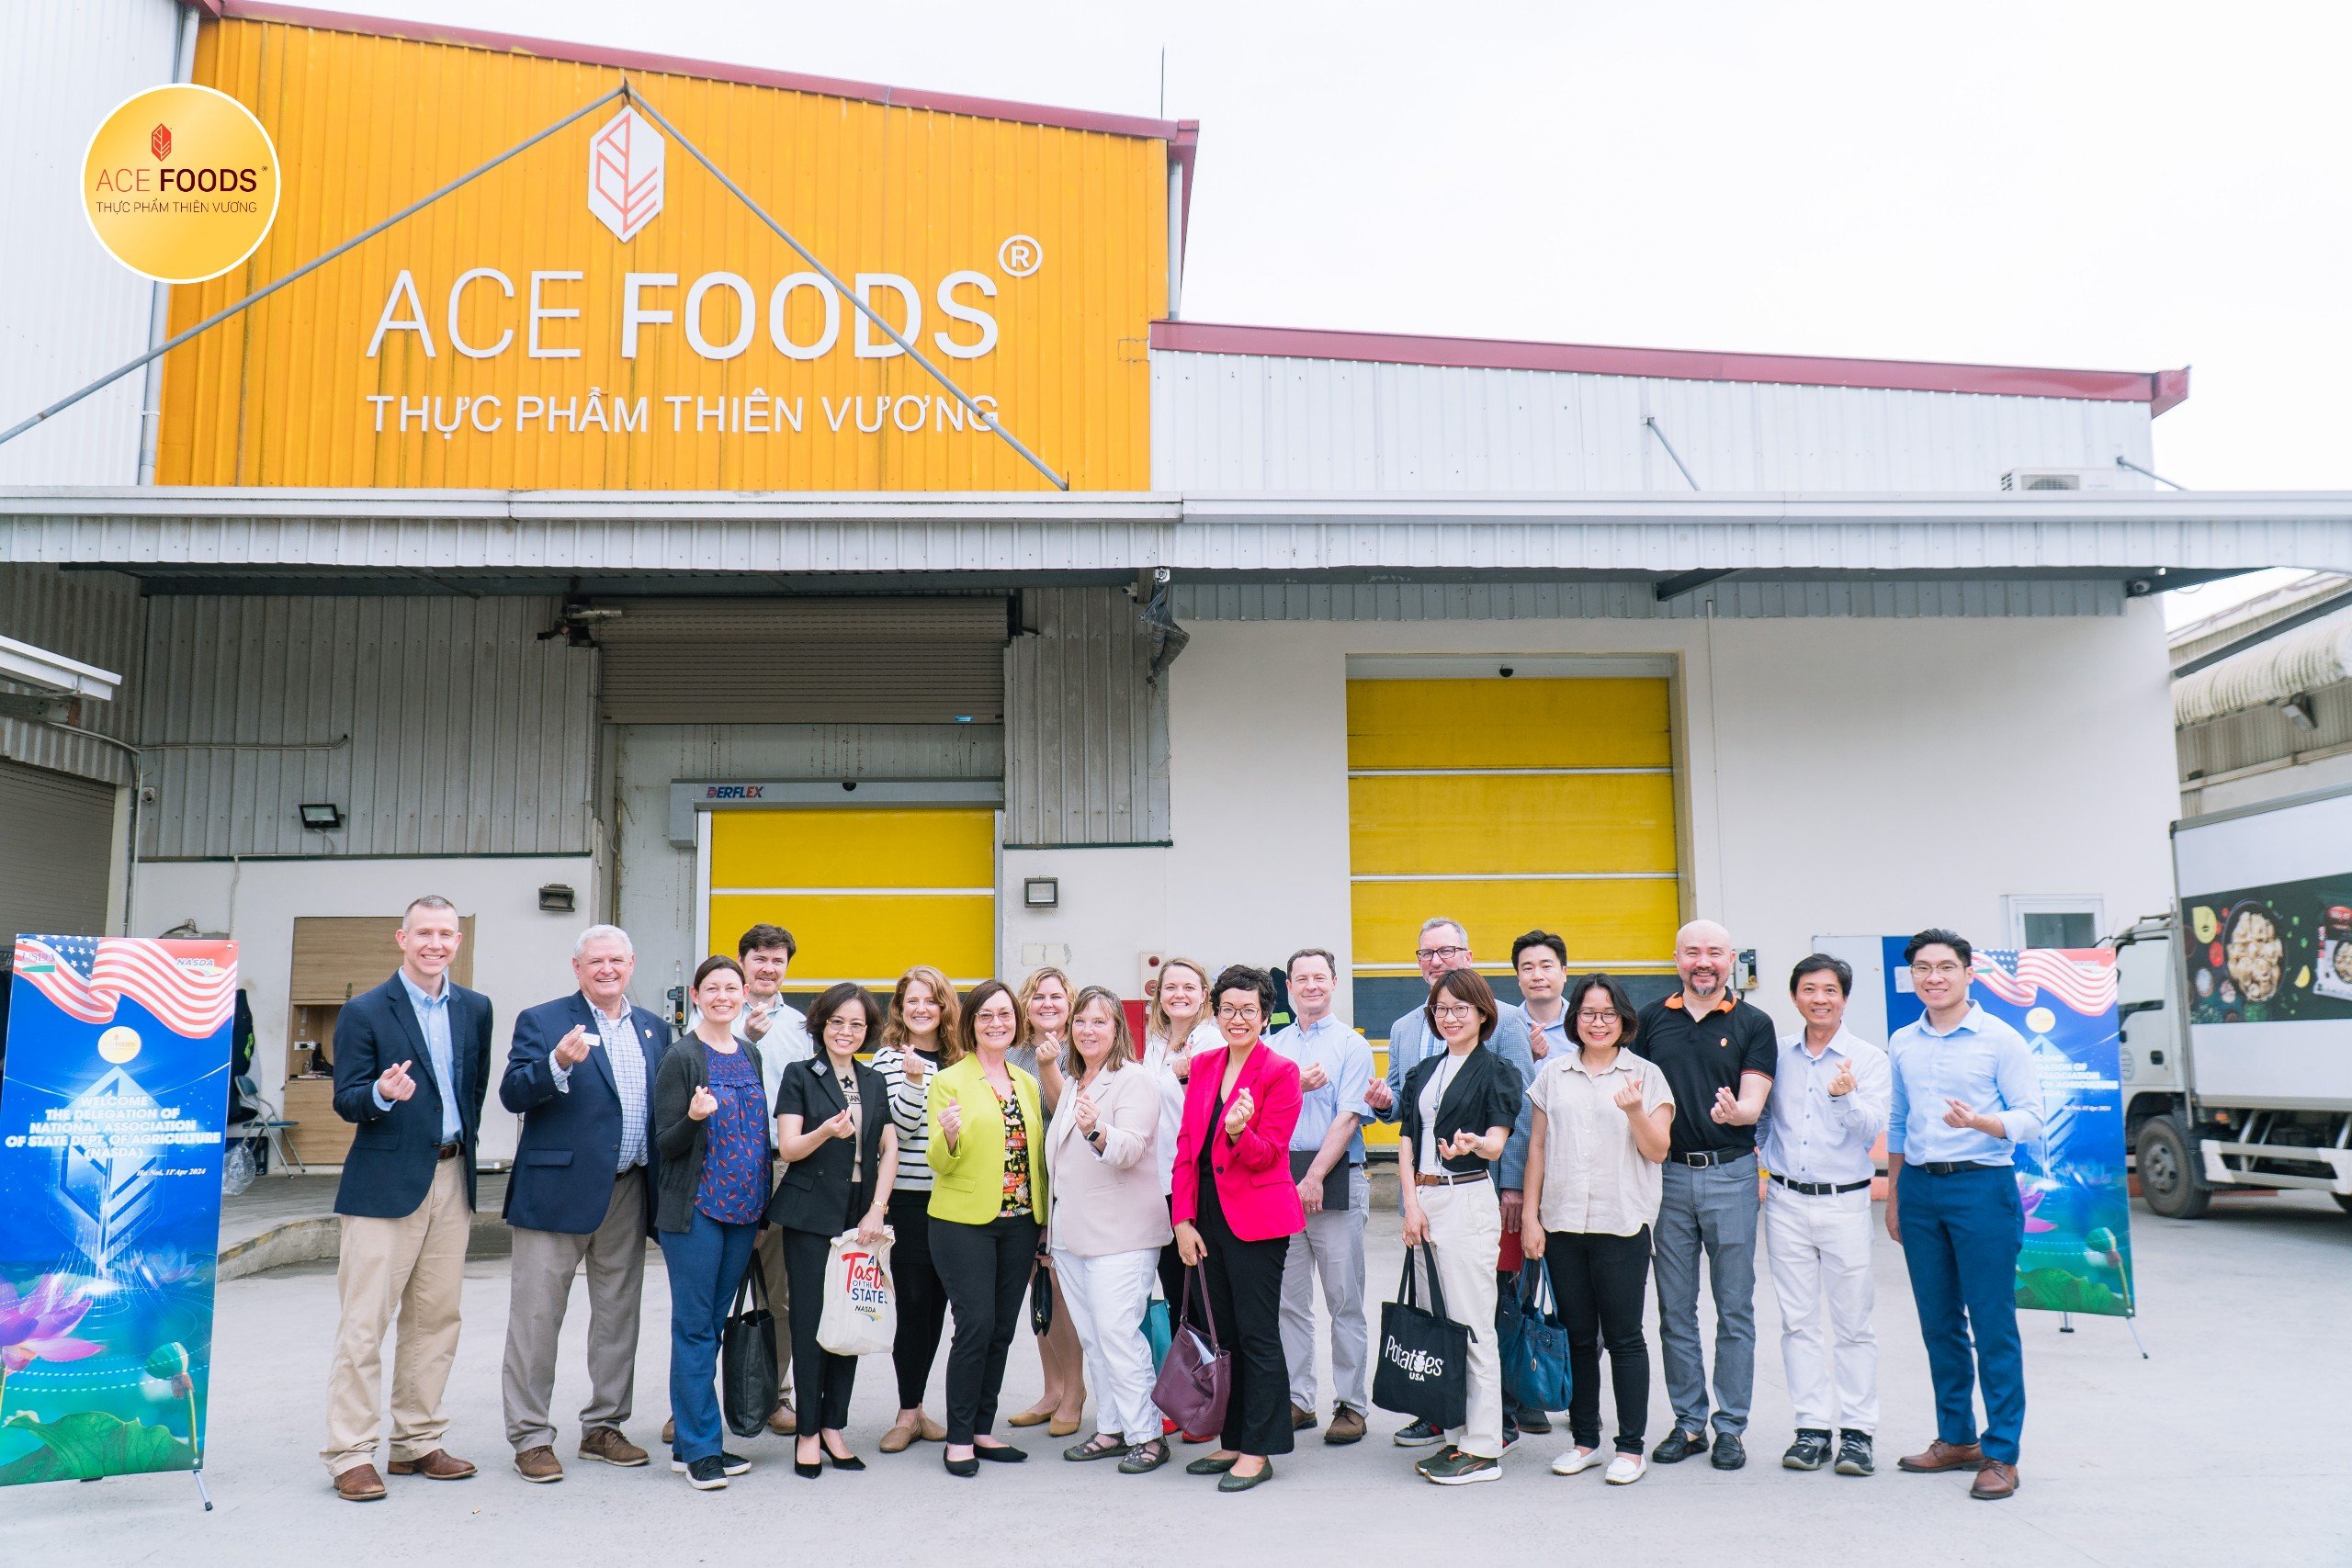 Phái đoàn bộ nông nghiệp Hoa Kỳ đến thăm và làm việc tại nhà máy Thiên Vương ACE FOODS Đan Phượng Hà Nội